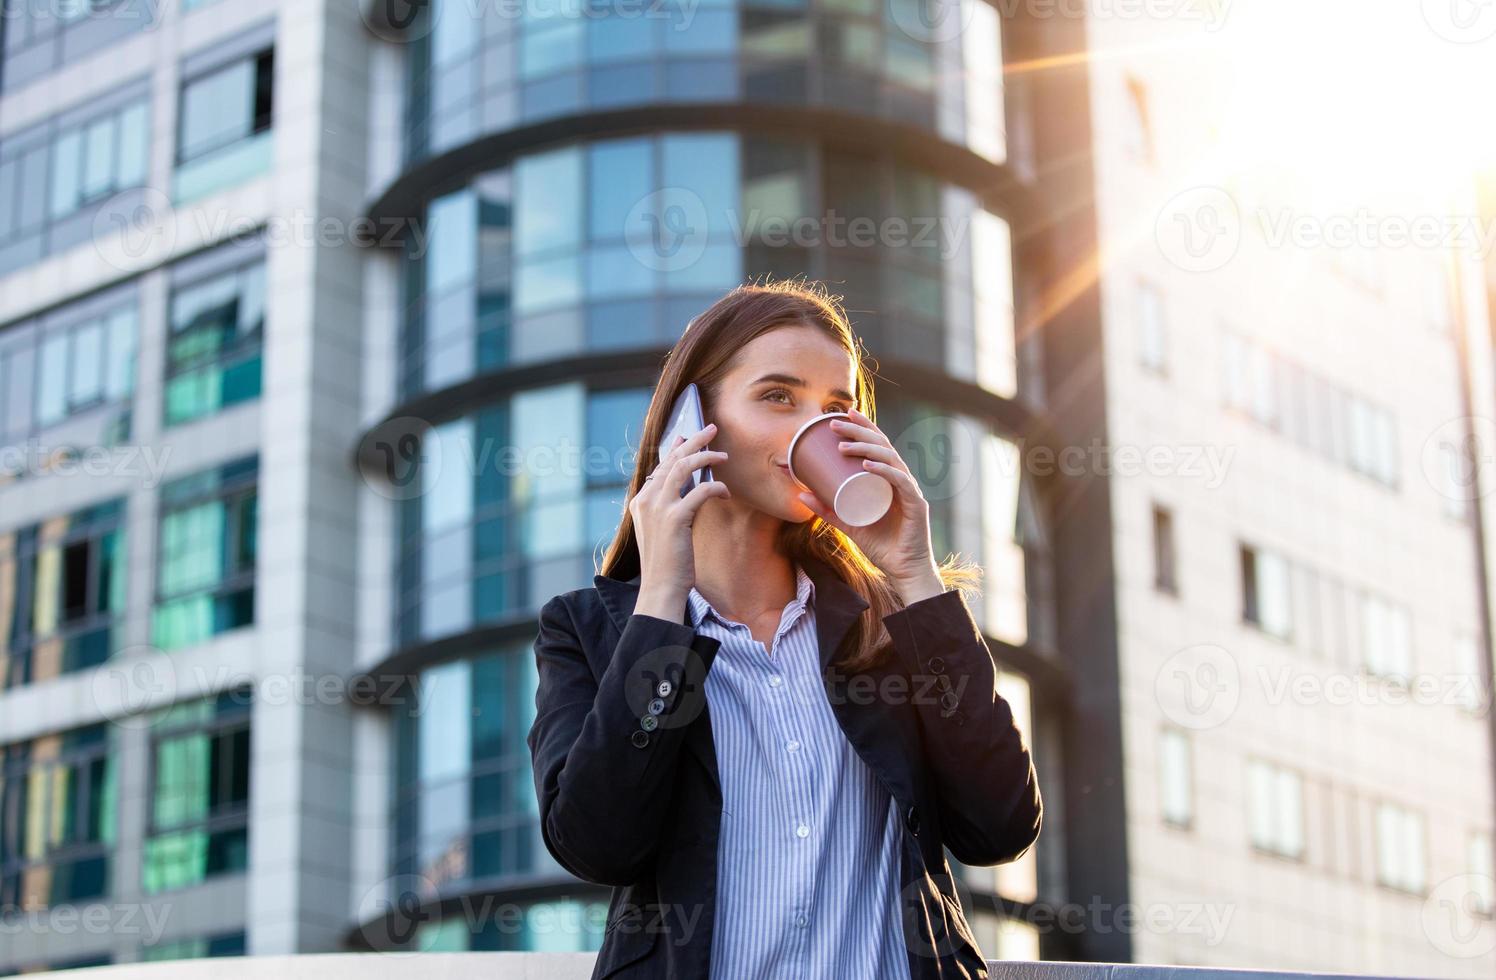 advokat affärskvinna professionell gående utomhus talande på cell smart telefon dricka kaffe från disponibel papper kopp. affärskvinna på henne mobil telefon foto